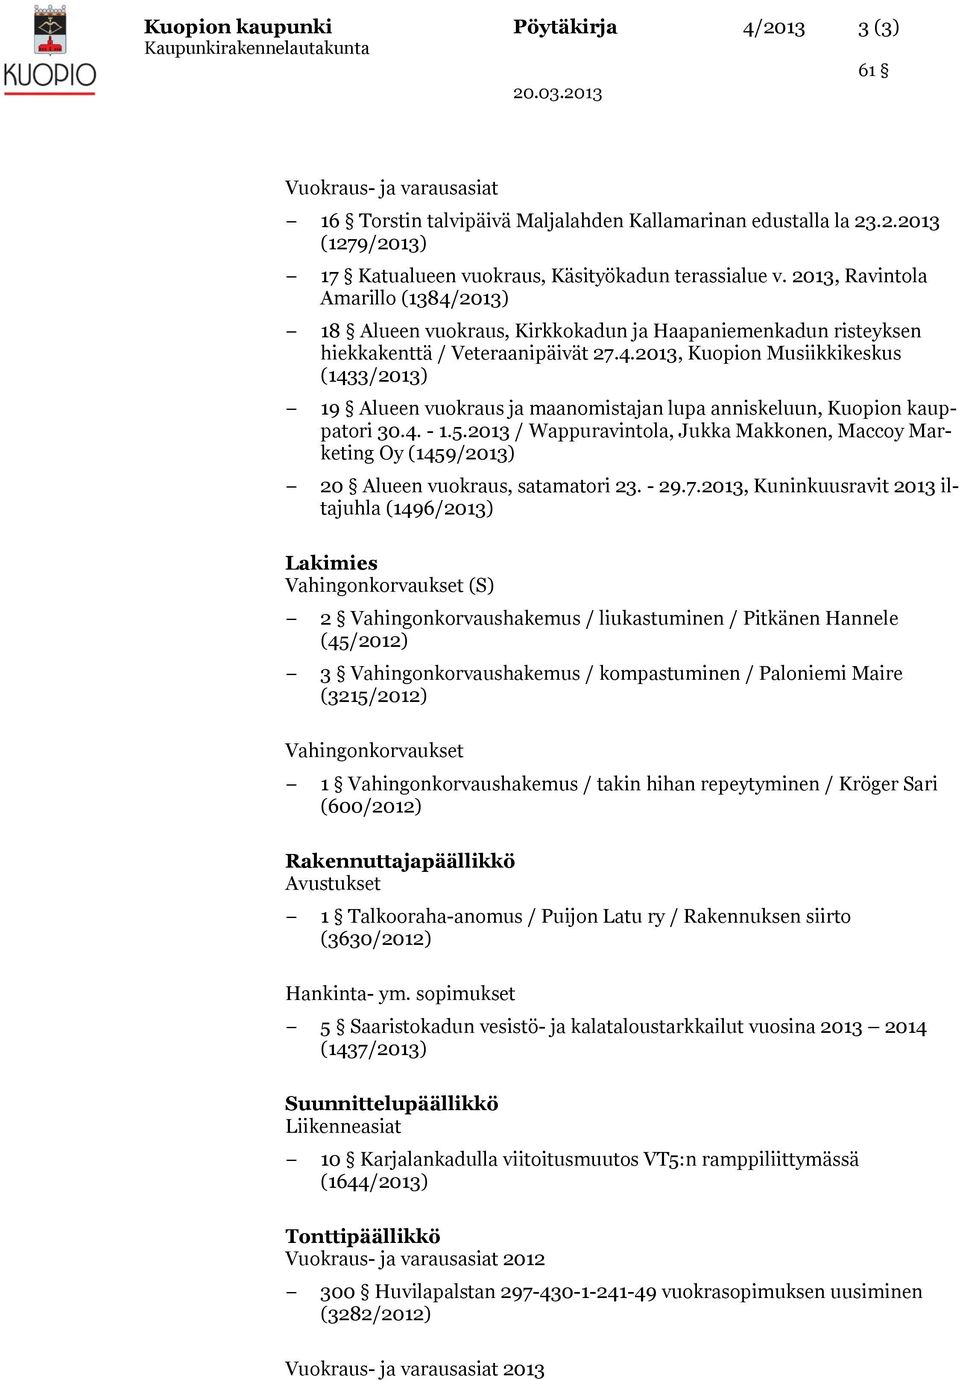 4. - 1.5.2013 / Wappuravintola, Jukka Makkonen, Maccoy Marketing Oy (1459/2013) 20 Alueen vuokraus, satamatori 23. - 29.7.